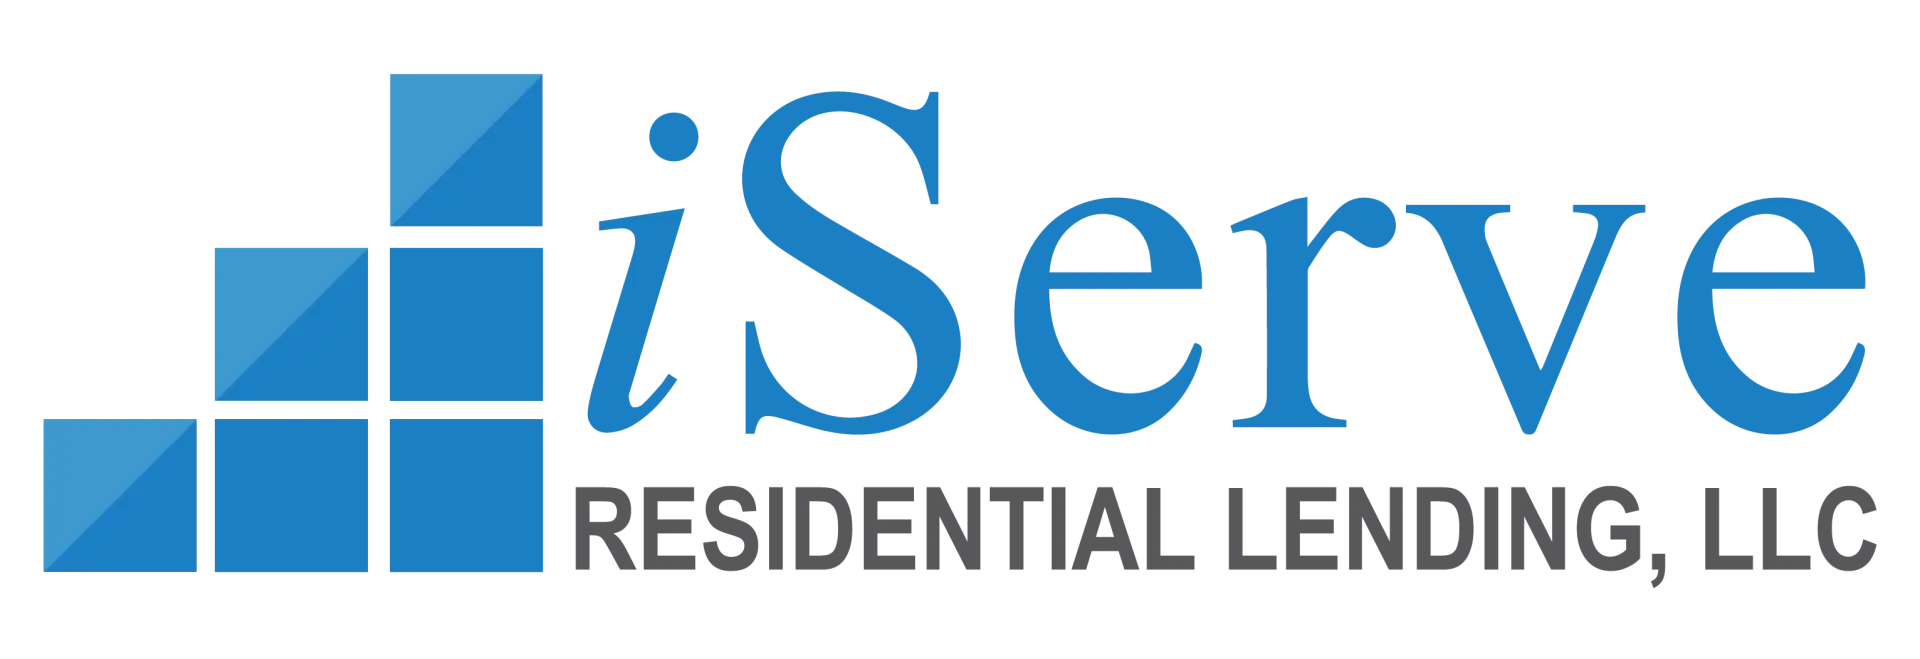 iServe Residential Lending, LLC